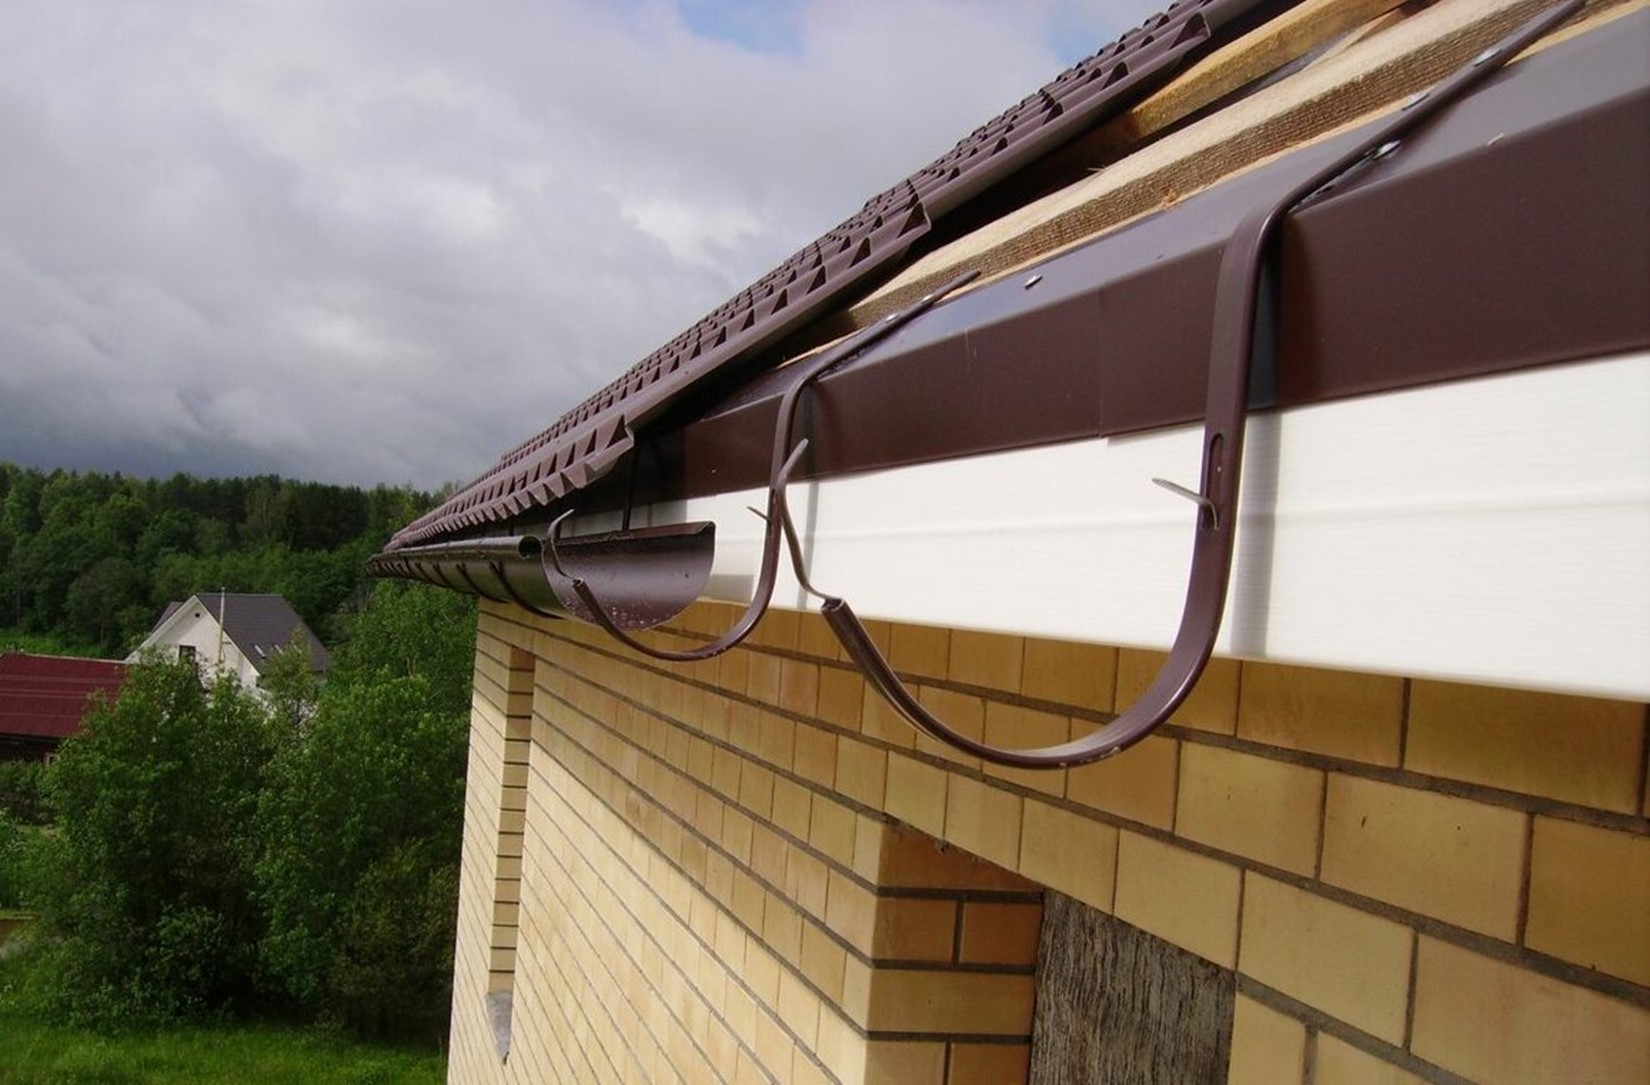 Как установить водостоки, если крыша уже покрыта